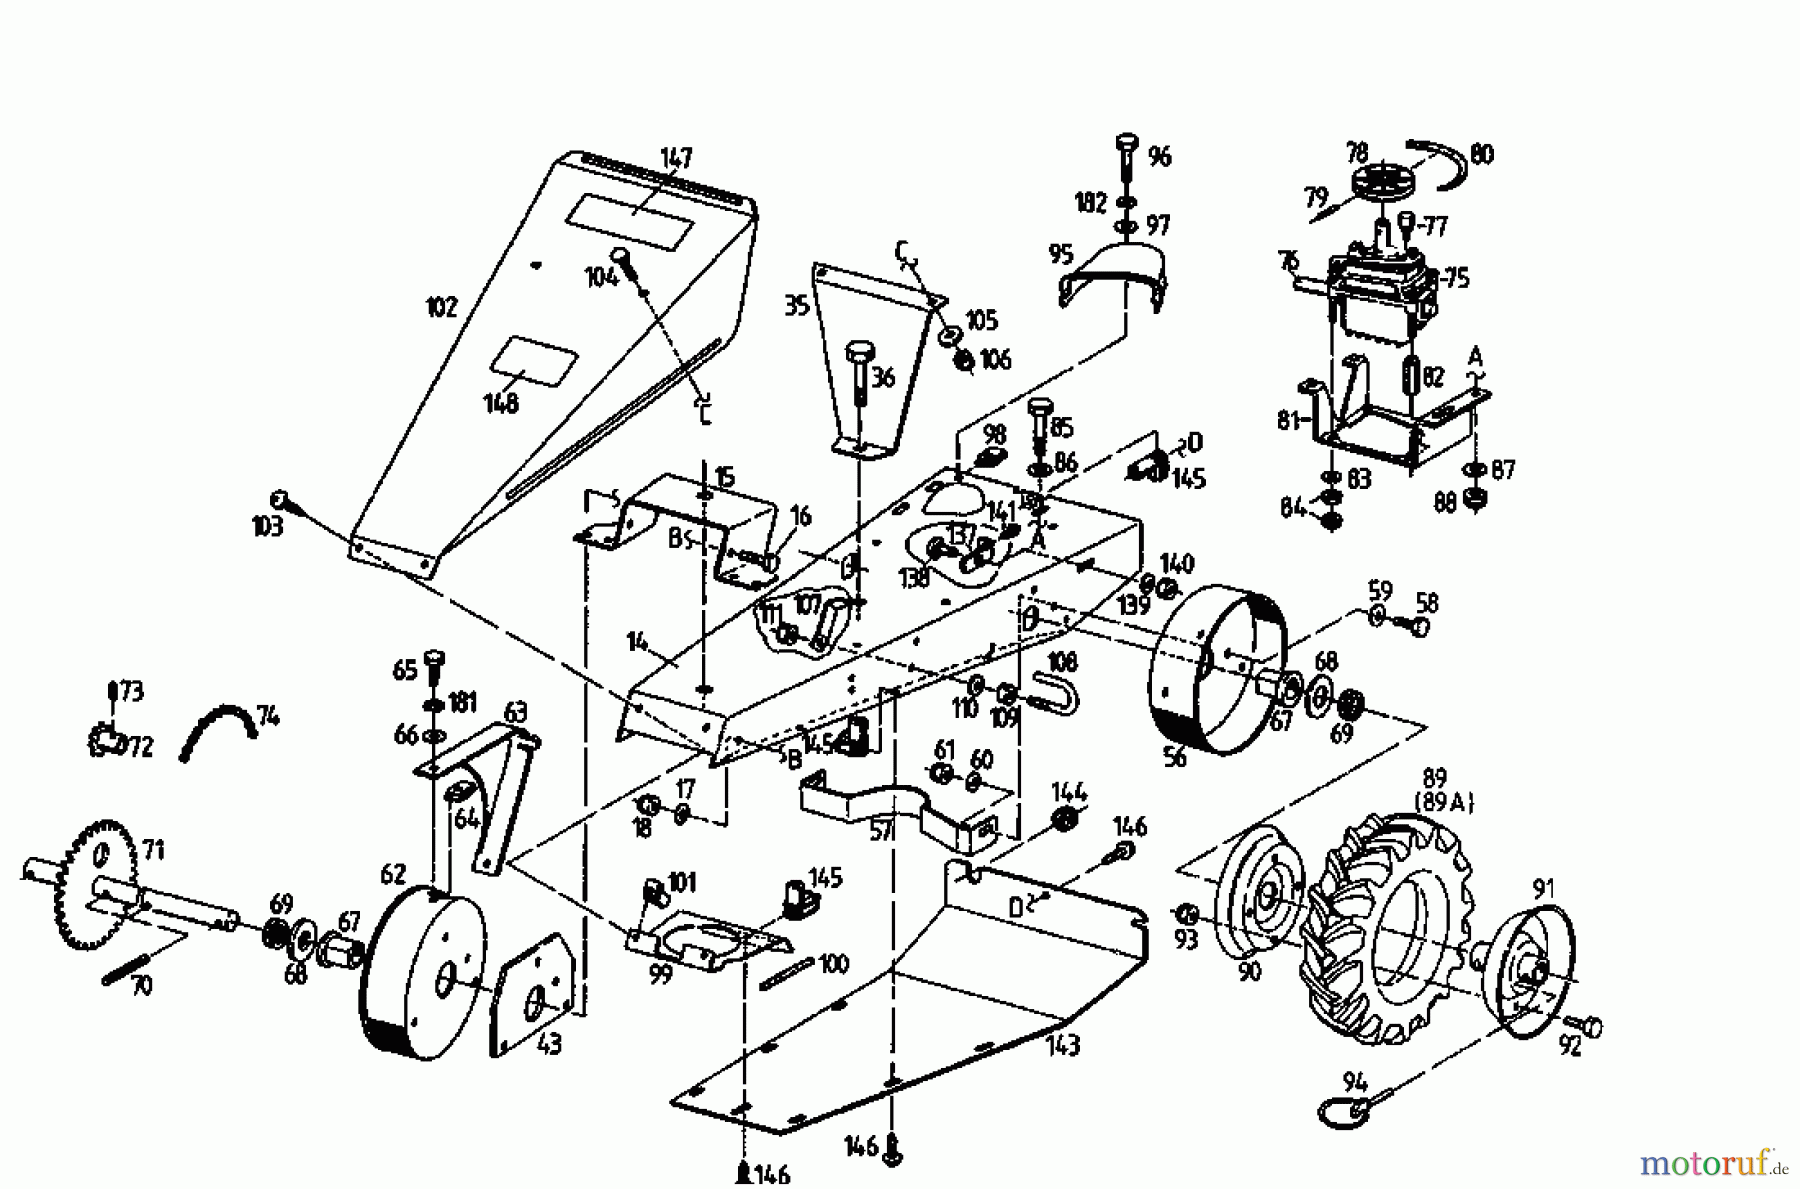  Golf Cutter bar mower 370 BMR 4 07510.05  (1993) Drive system, Wheels